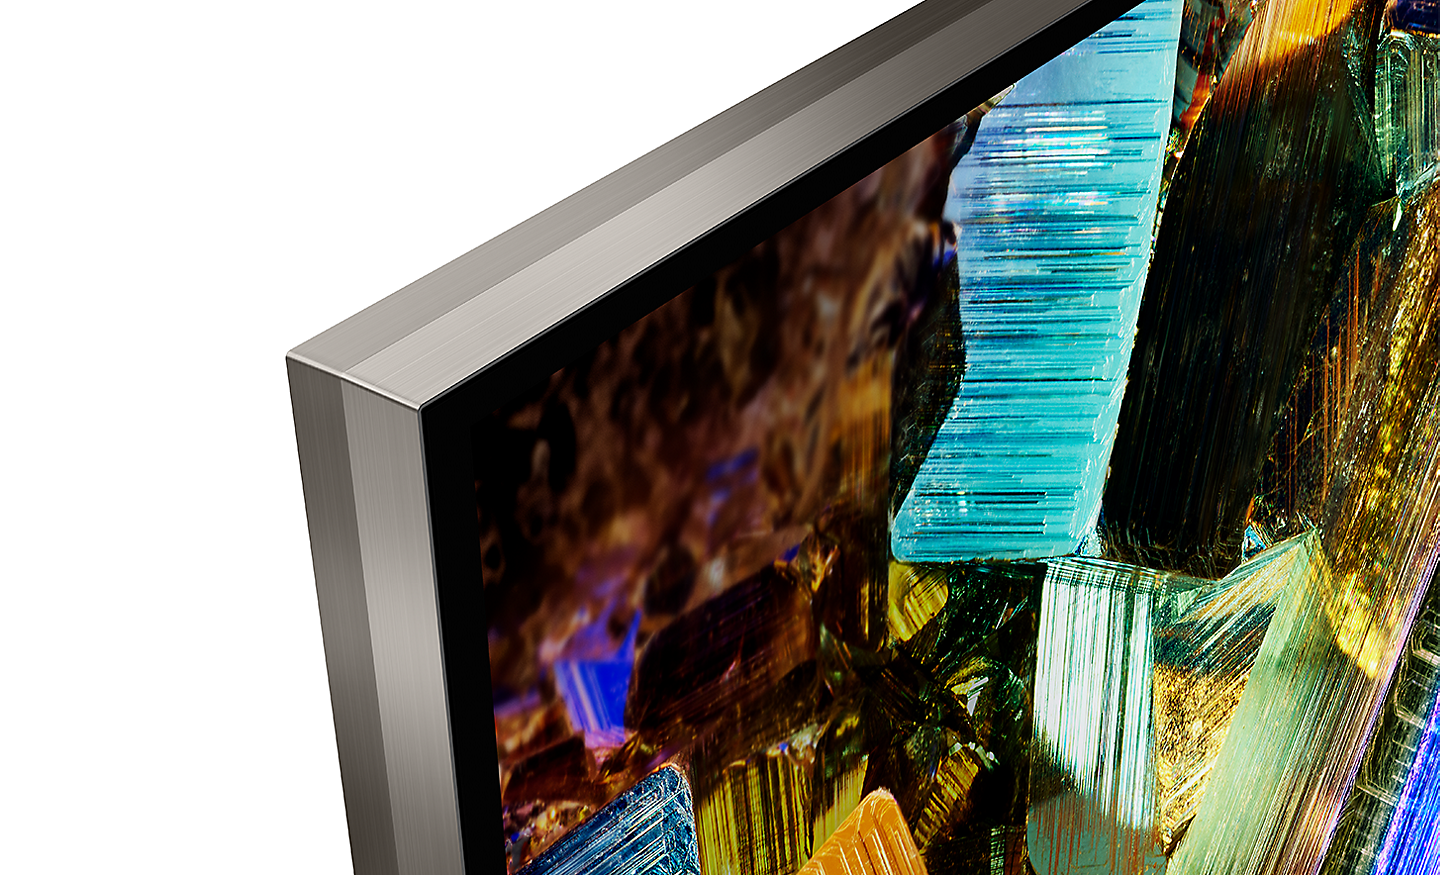 Détails d'un coin de la TV BRAVIA montrant un design minimaliste presque sans cadre et une capture d'écran de boîtes en aluminium colorées